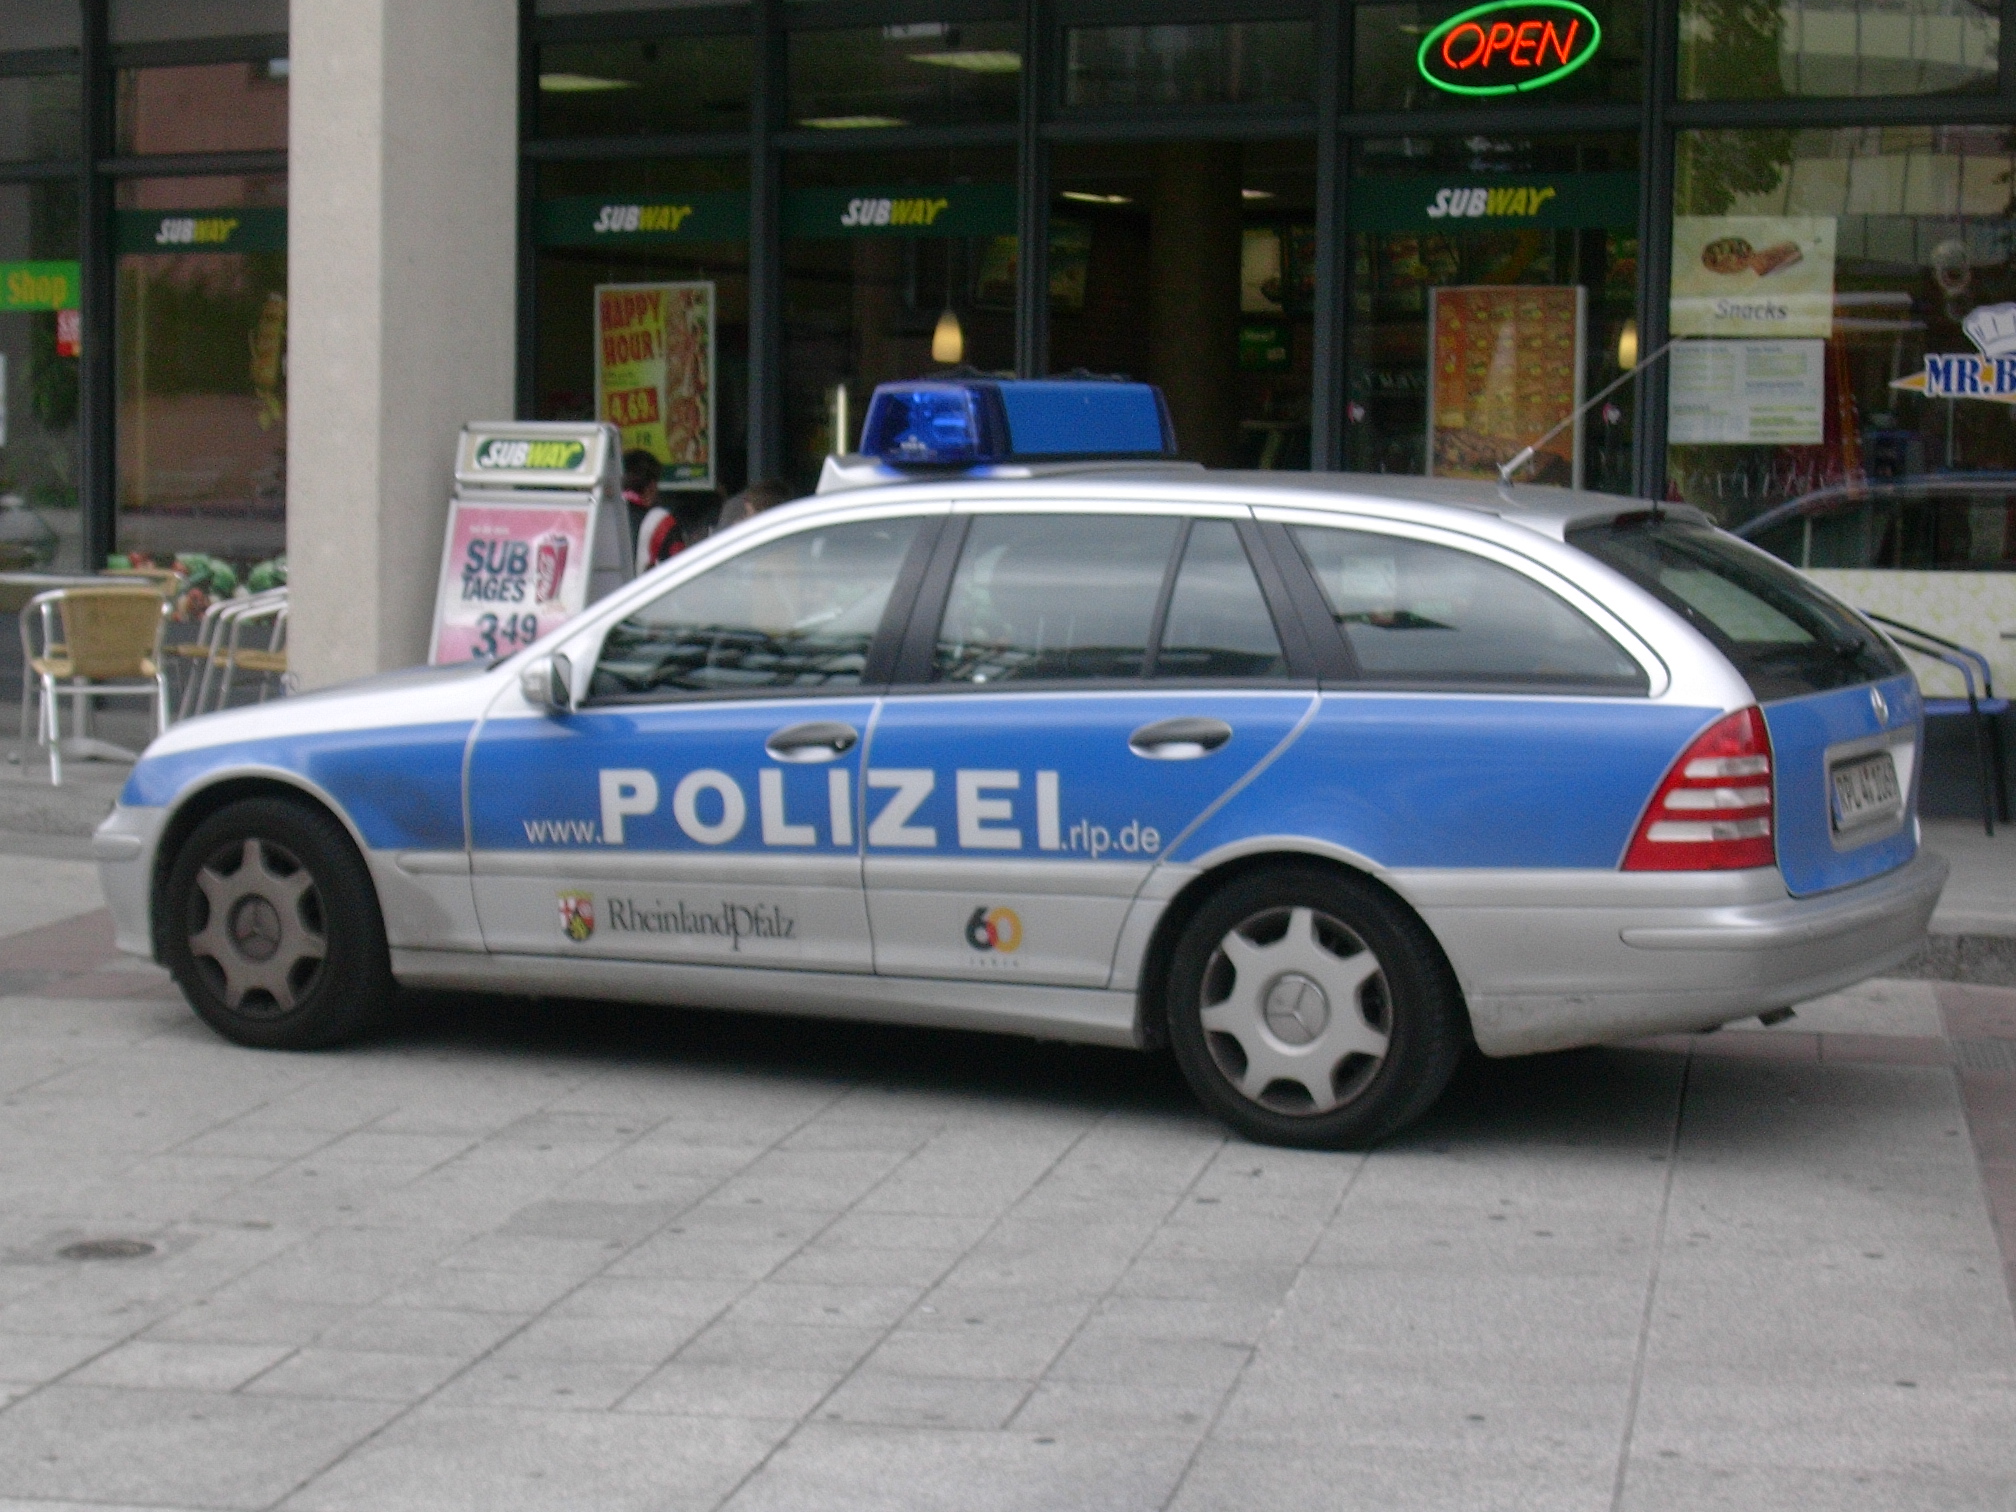 Datei:Polizeiauto RLP.jpg